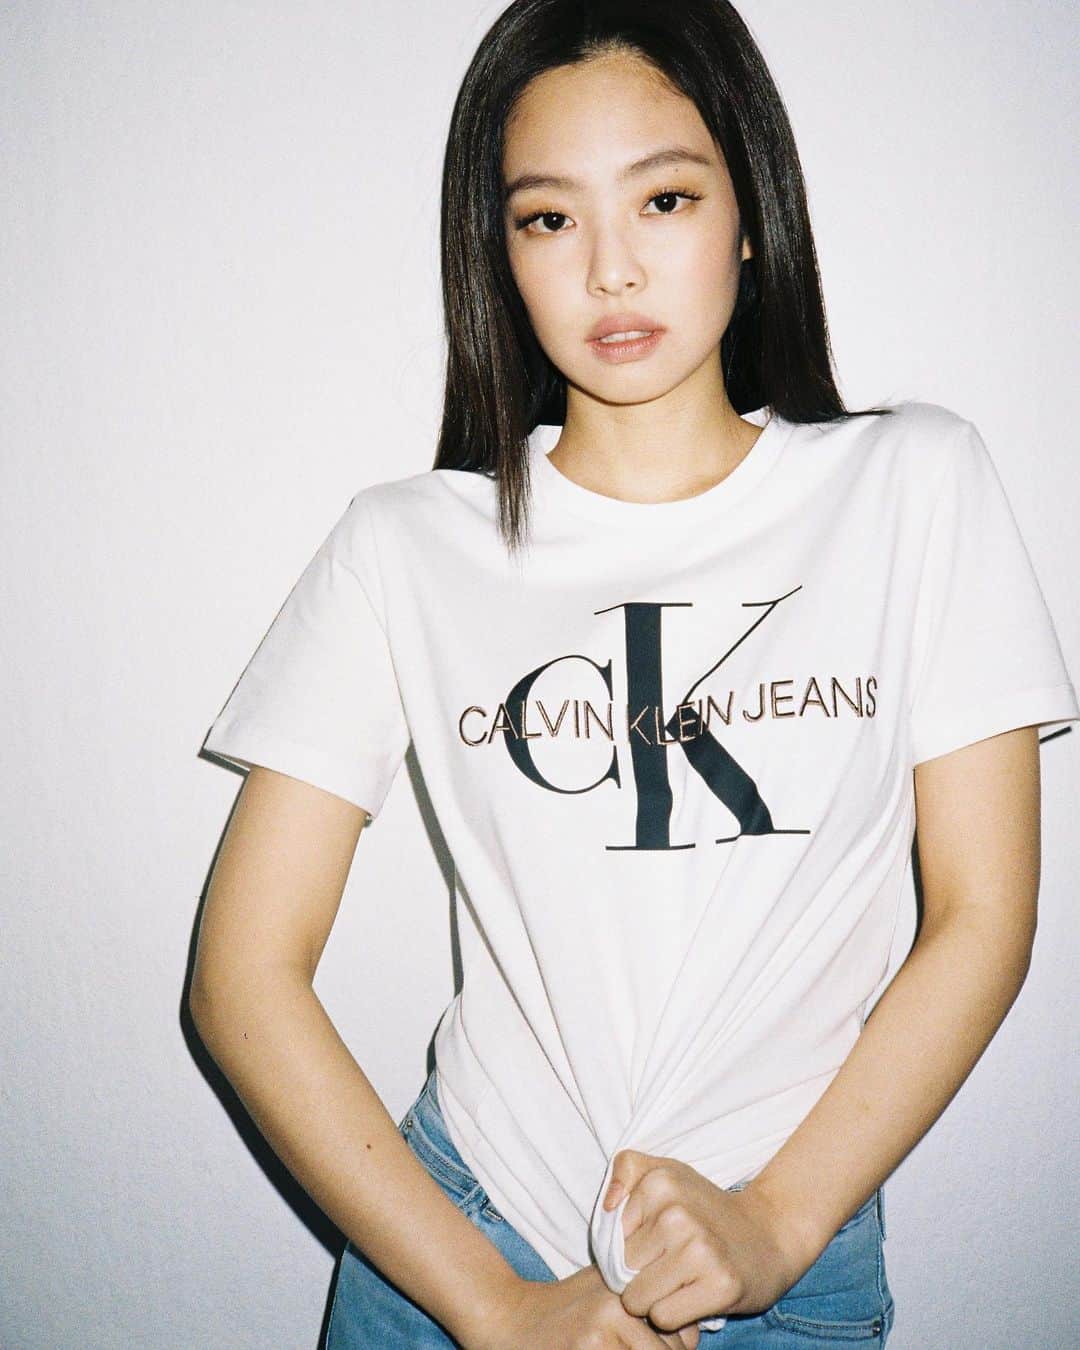 Jennie for Calvin KLEIN Tシャツ | mdh.com.sa